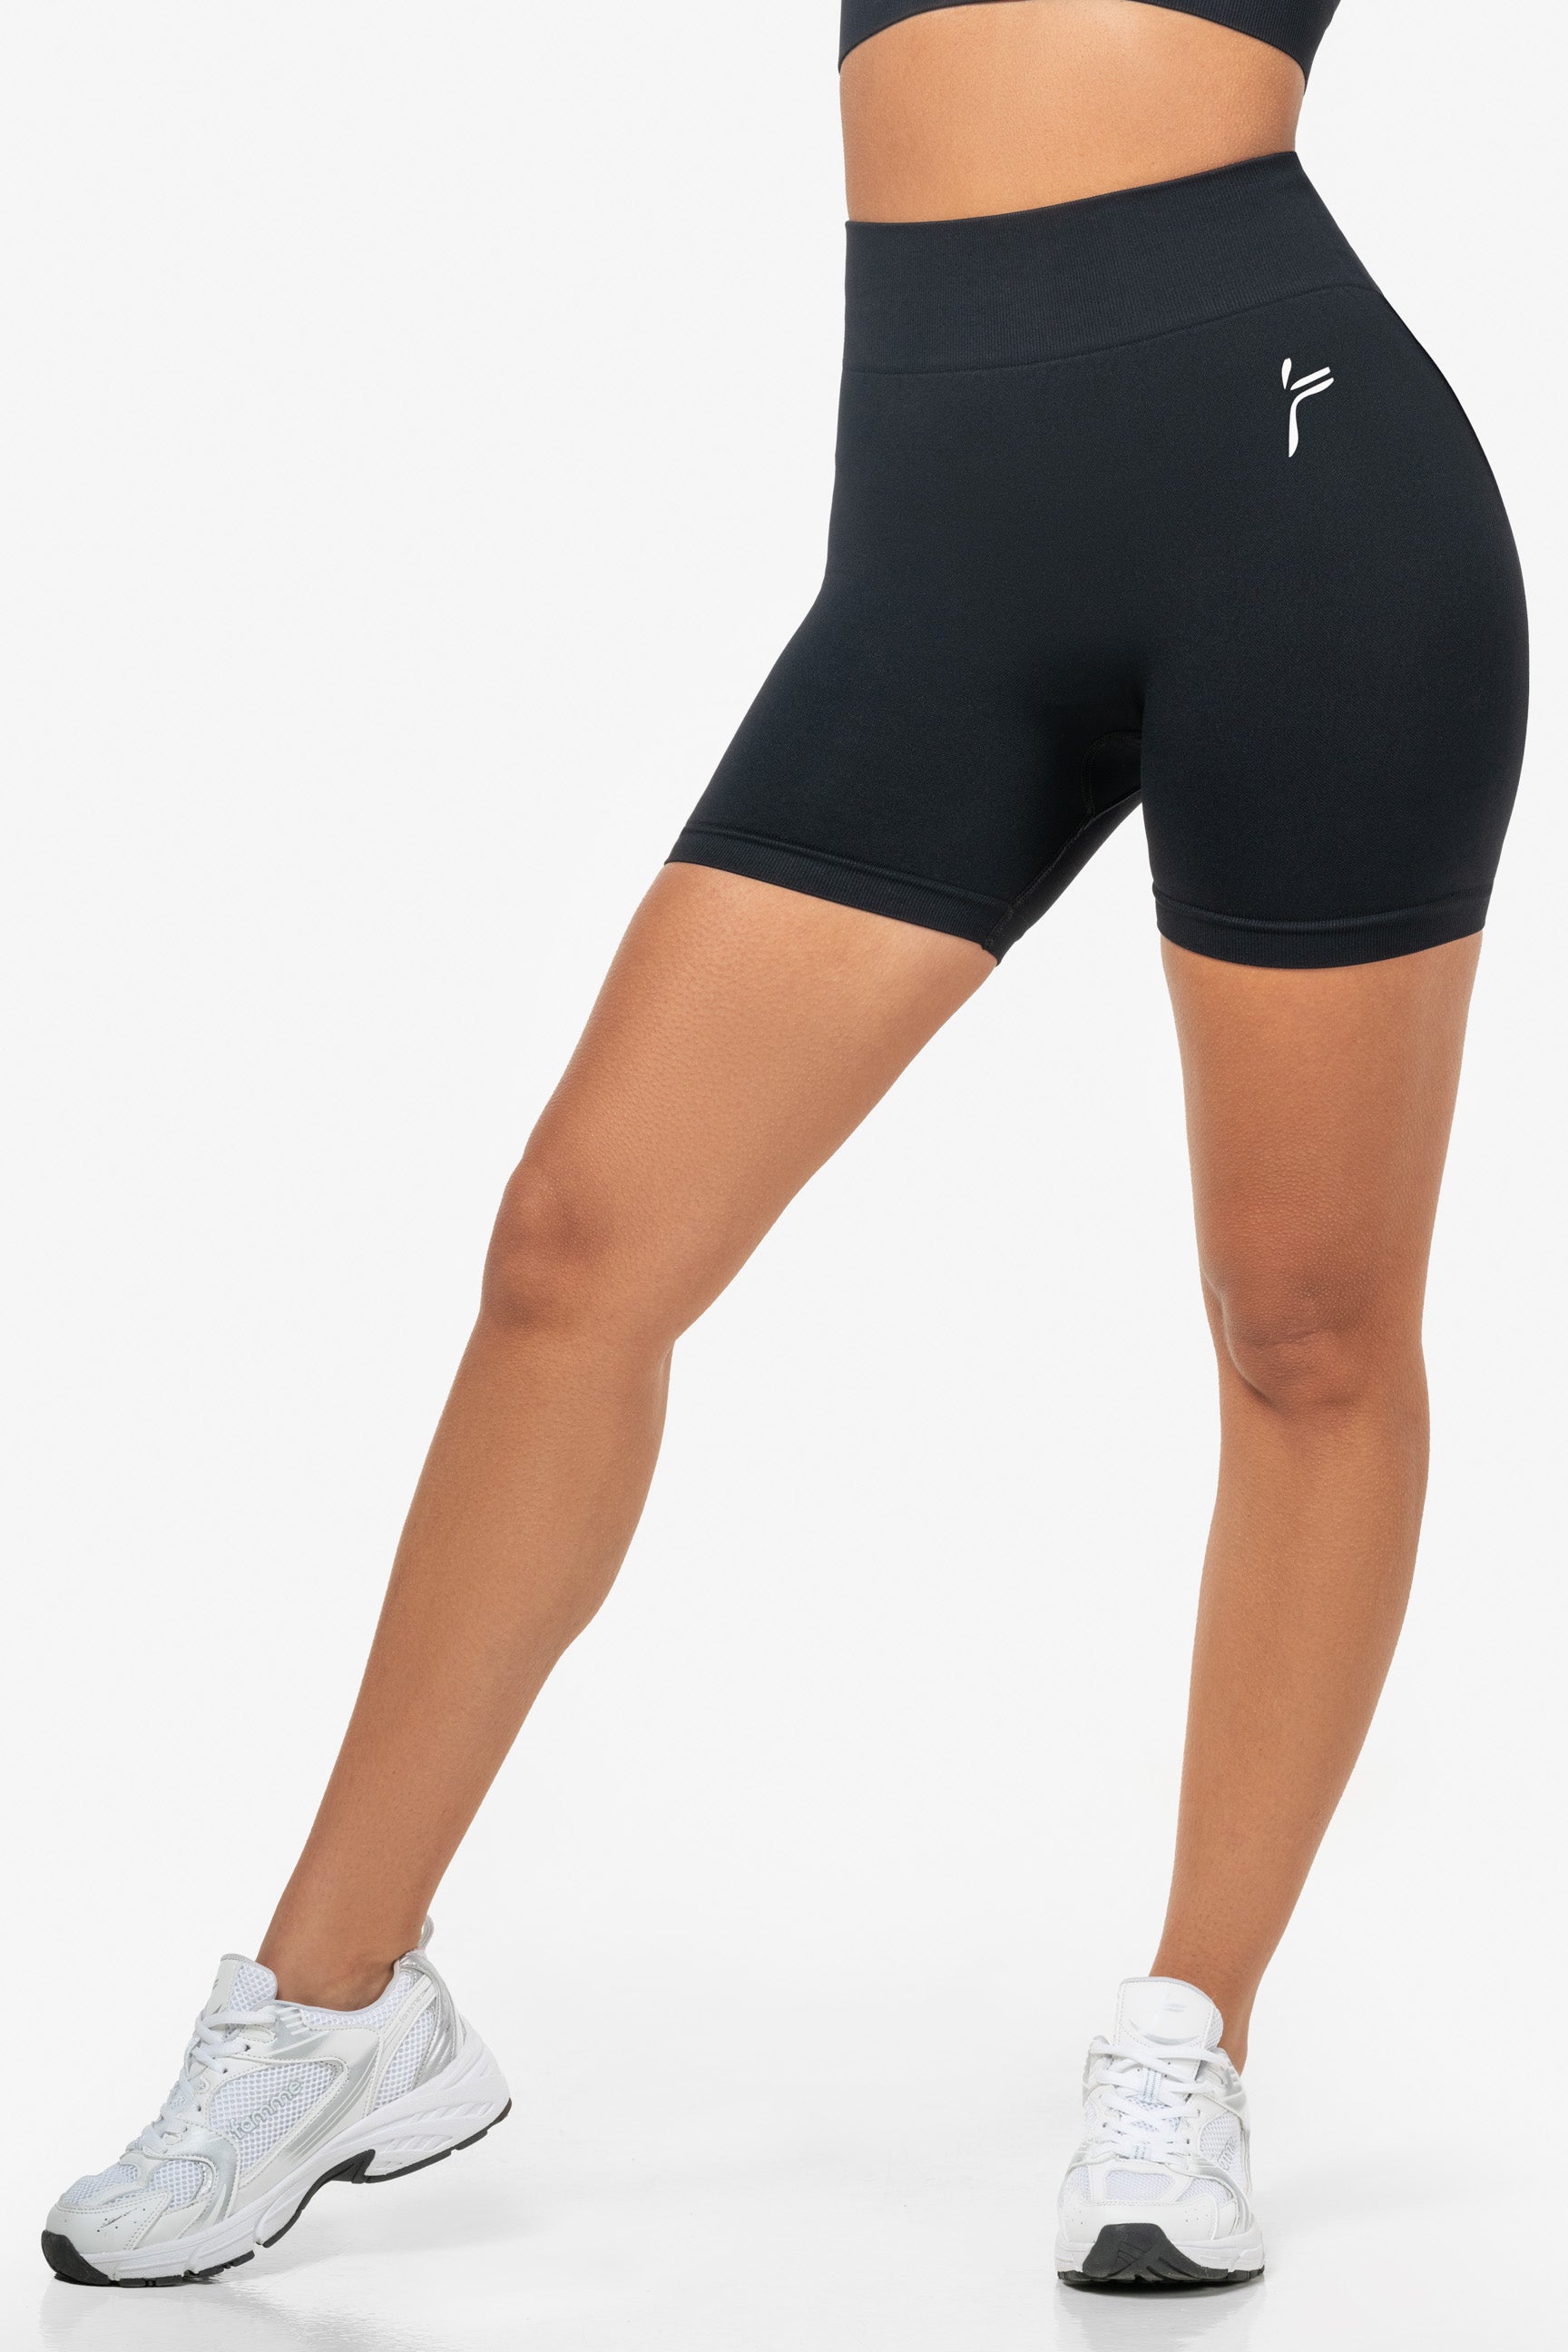 Black Lunge Scrunch Shorts - for dame - Famme - Shorts